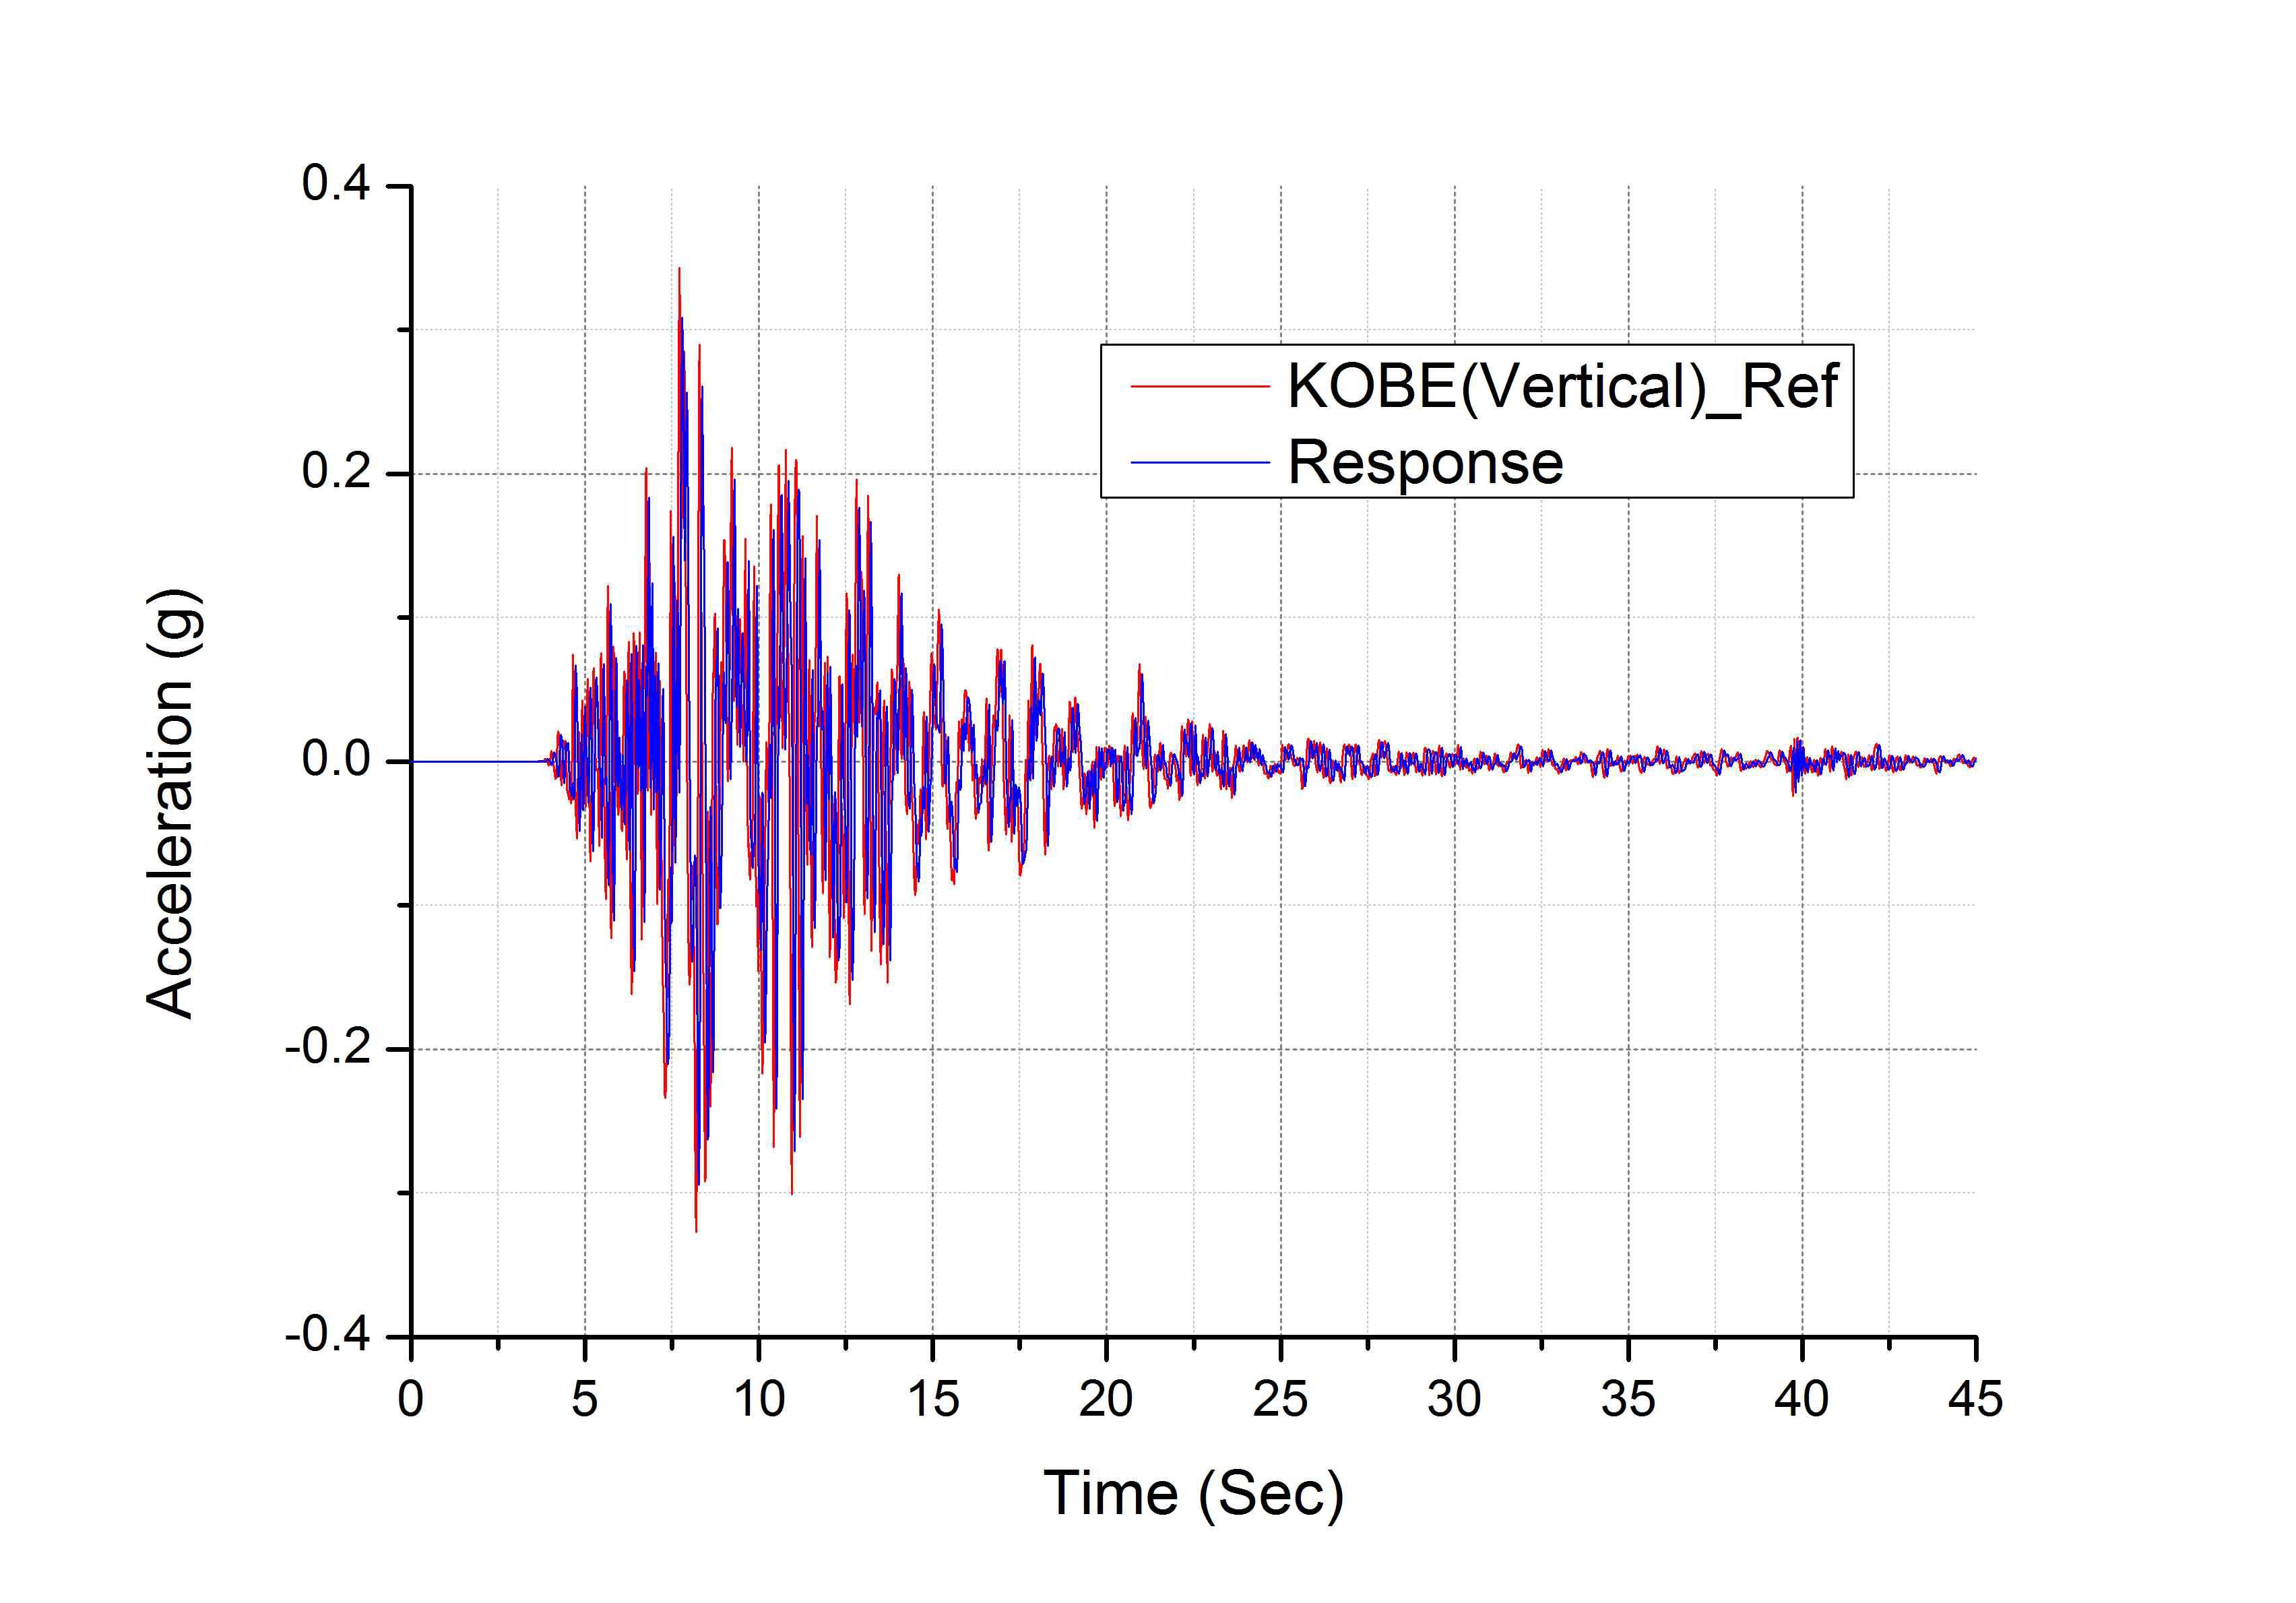 고베 지진파(Vertical) 가진 시험 응답 파형 비교 그래프